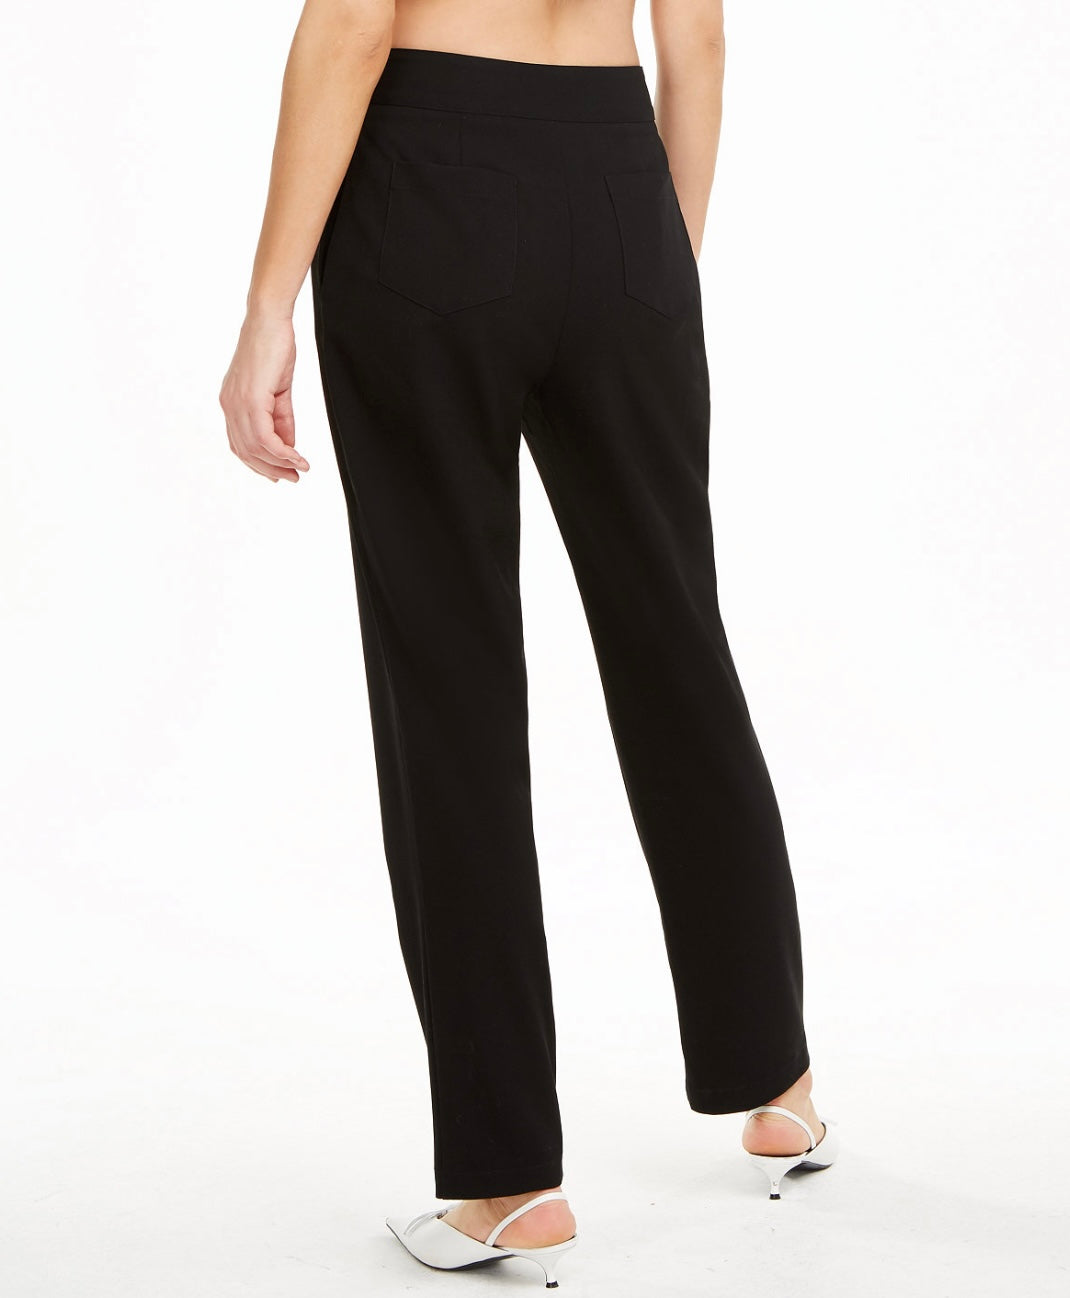 Danielle Bernstein Women's High Rise Zip-up Dress Pants Black